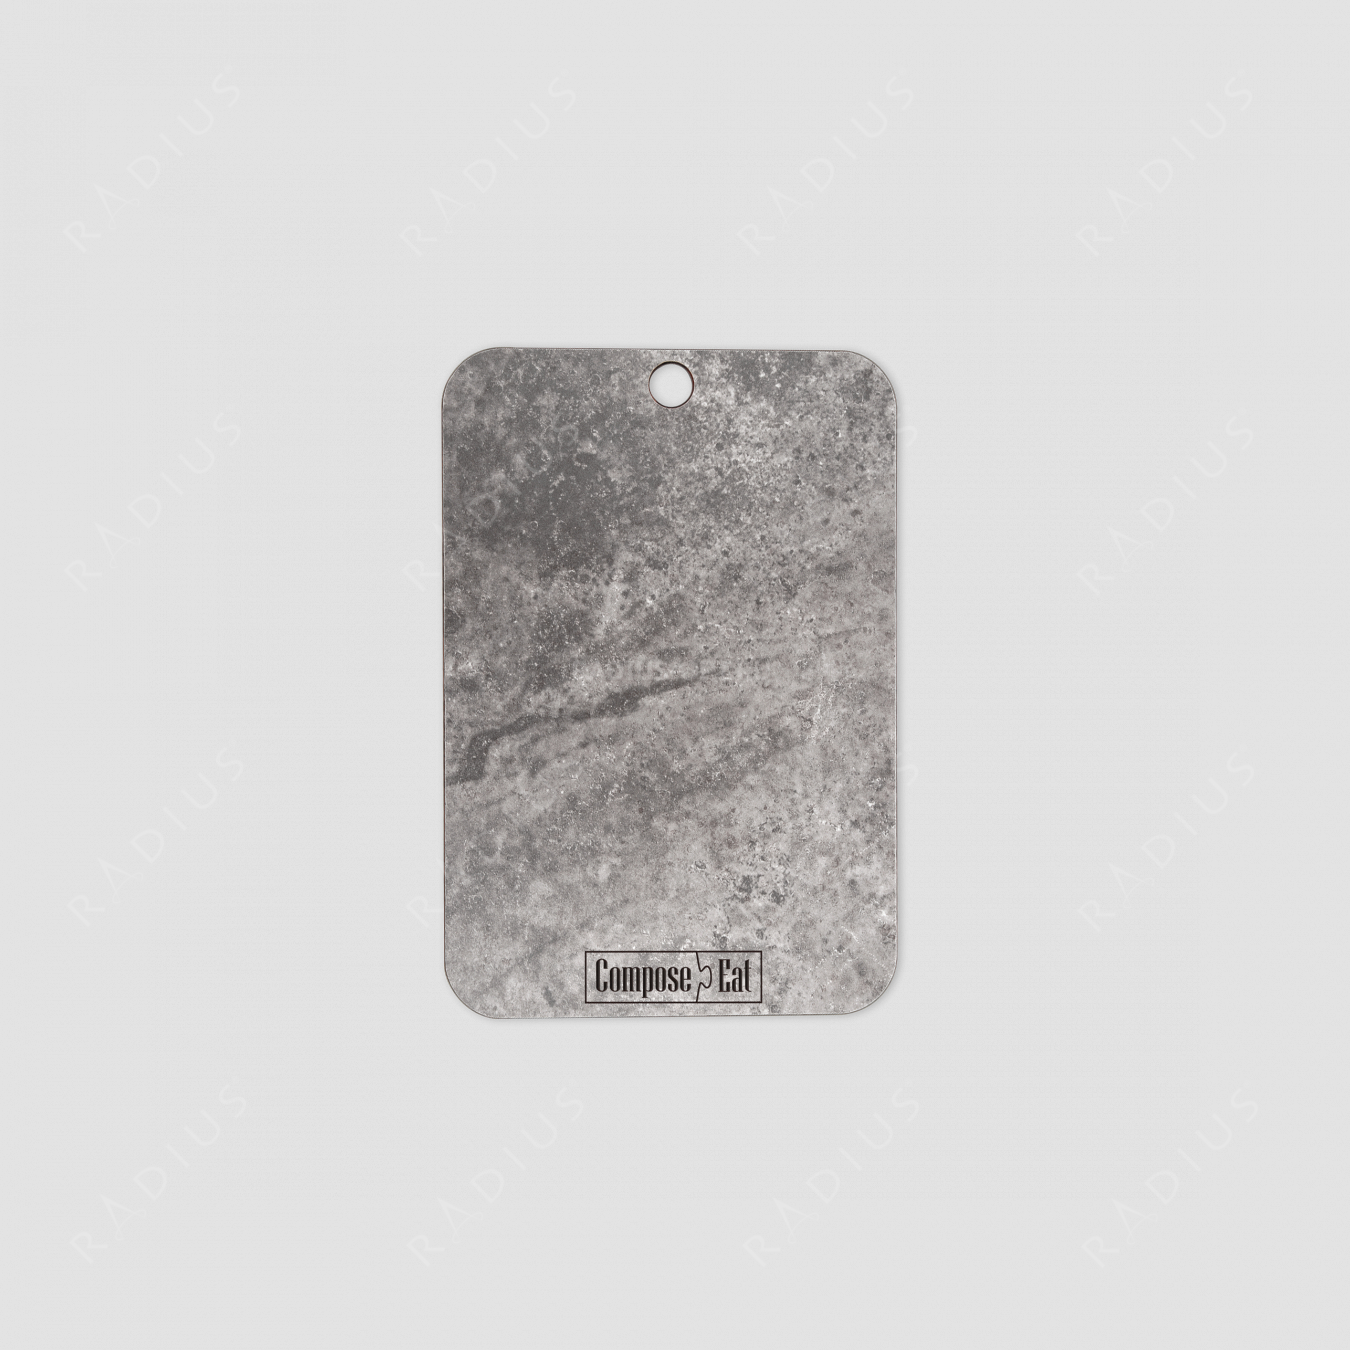 Доска разделочная композитная, 22х15 см, мрамор серый, серия Everyday, ComposeEat, Россия